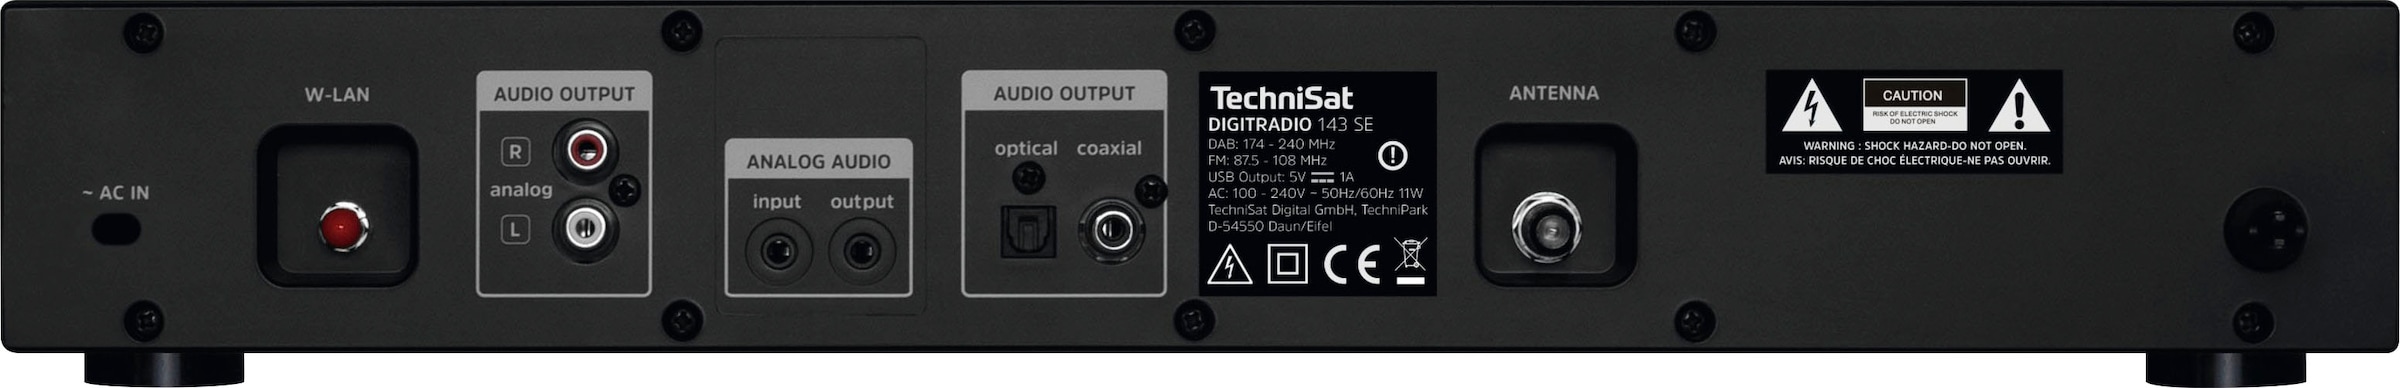 Digitalradio TechniSat Jahre mit Internet-Radio 143 »DIGITRADIO | RDS-Internetradio) 3 ➥ (DAB+)-FM-Tuner Garantie (Bluetooth-WLAN XXL UNIVERSAL (V3)«,